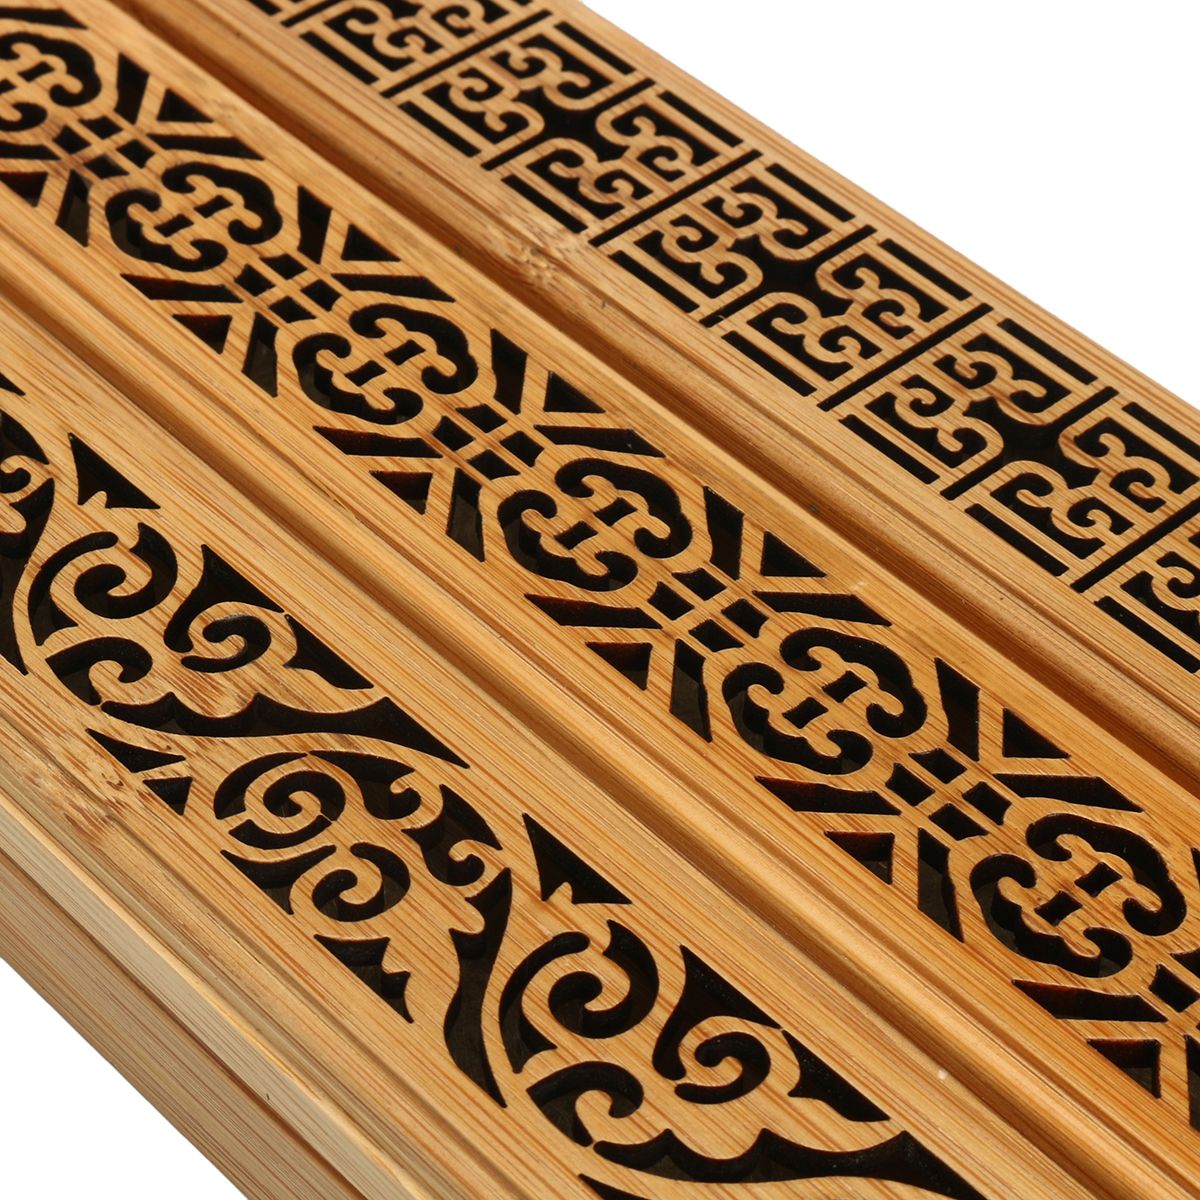 Bamboo-Incense-Burner-Box-Drawer-Magnet-Incense-Lore-Hollow-Carving-Cover-Burner-Censer-Holder-1329396